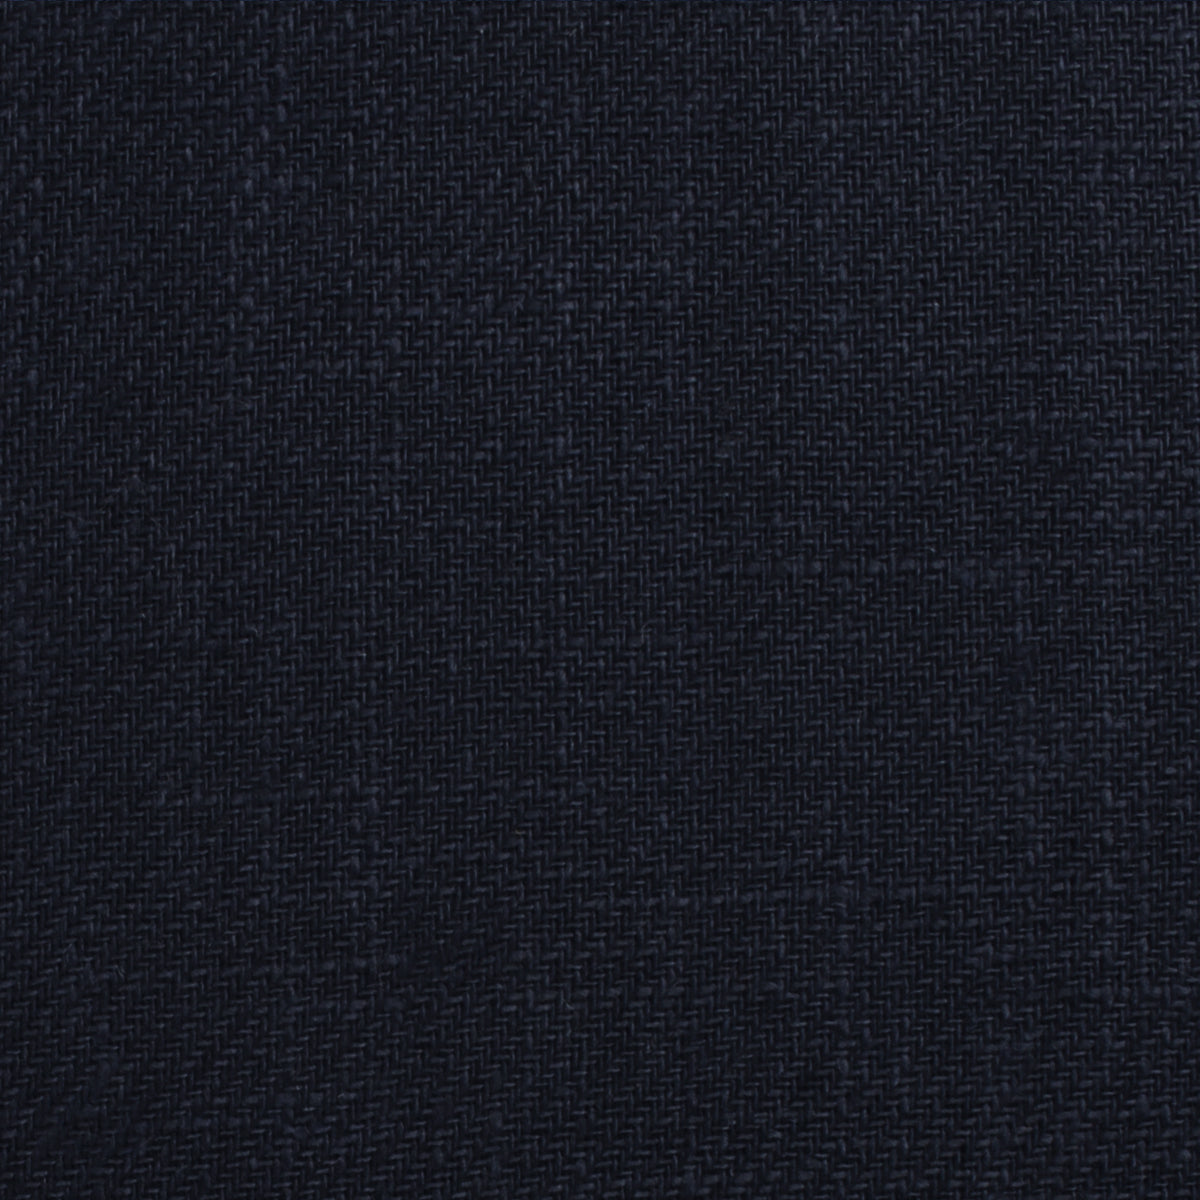 Marine Dark Navy Blue Twill Linen Fabric Swatch